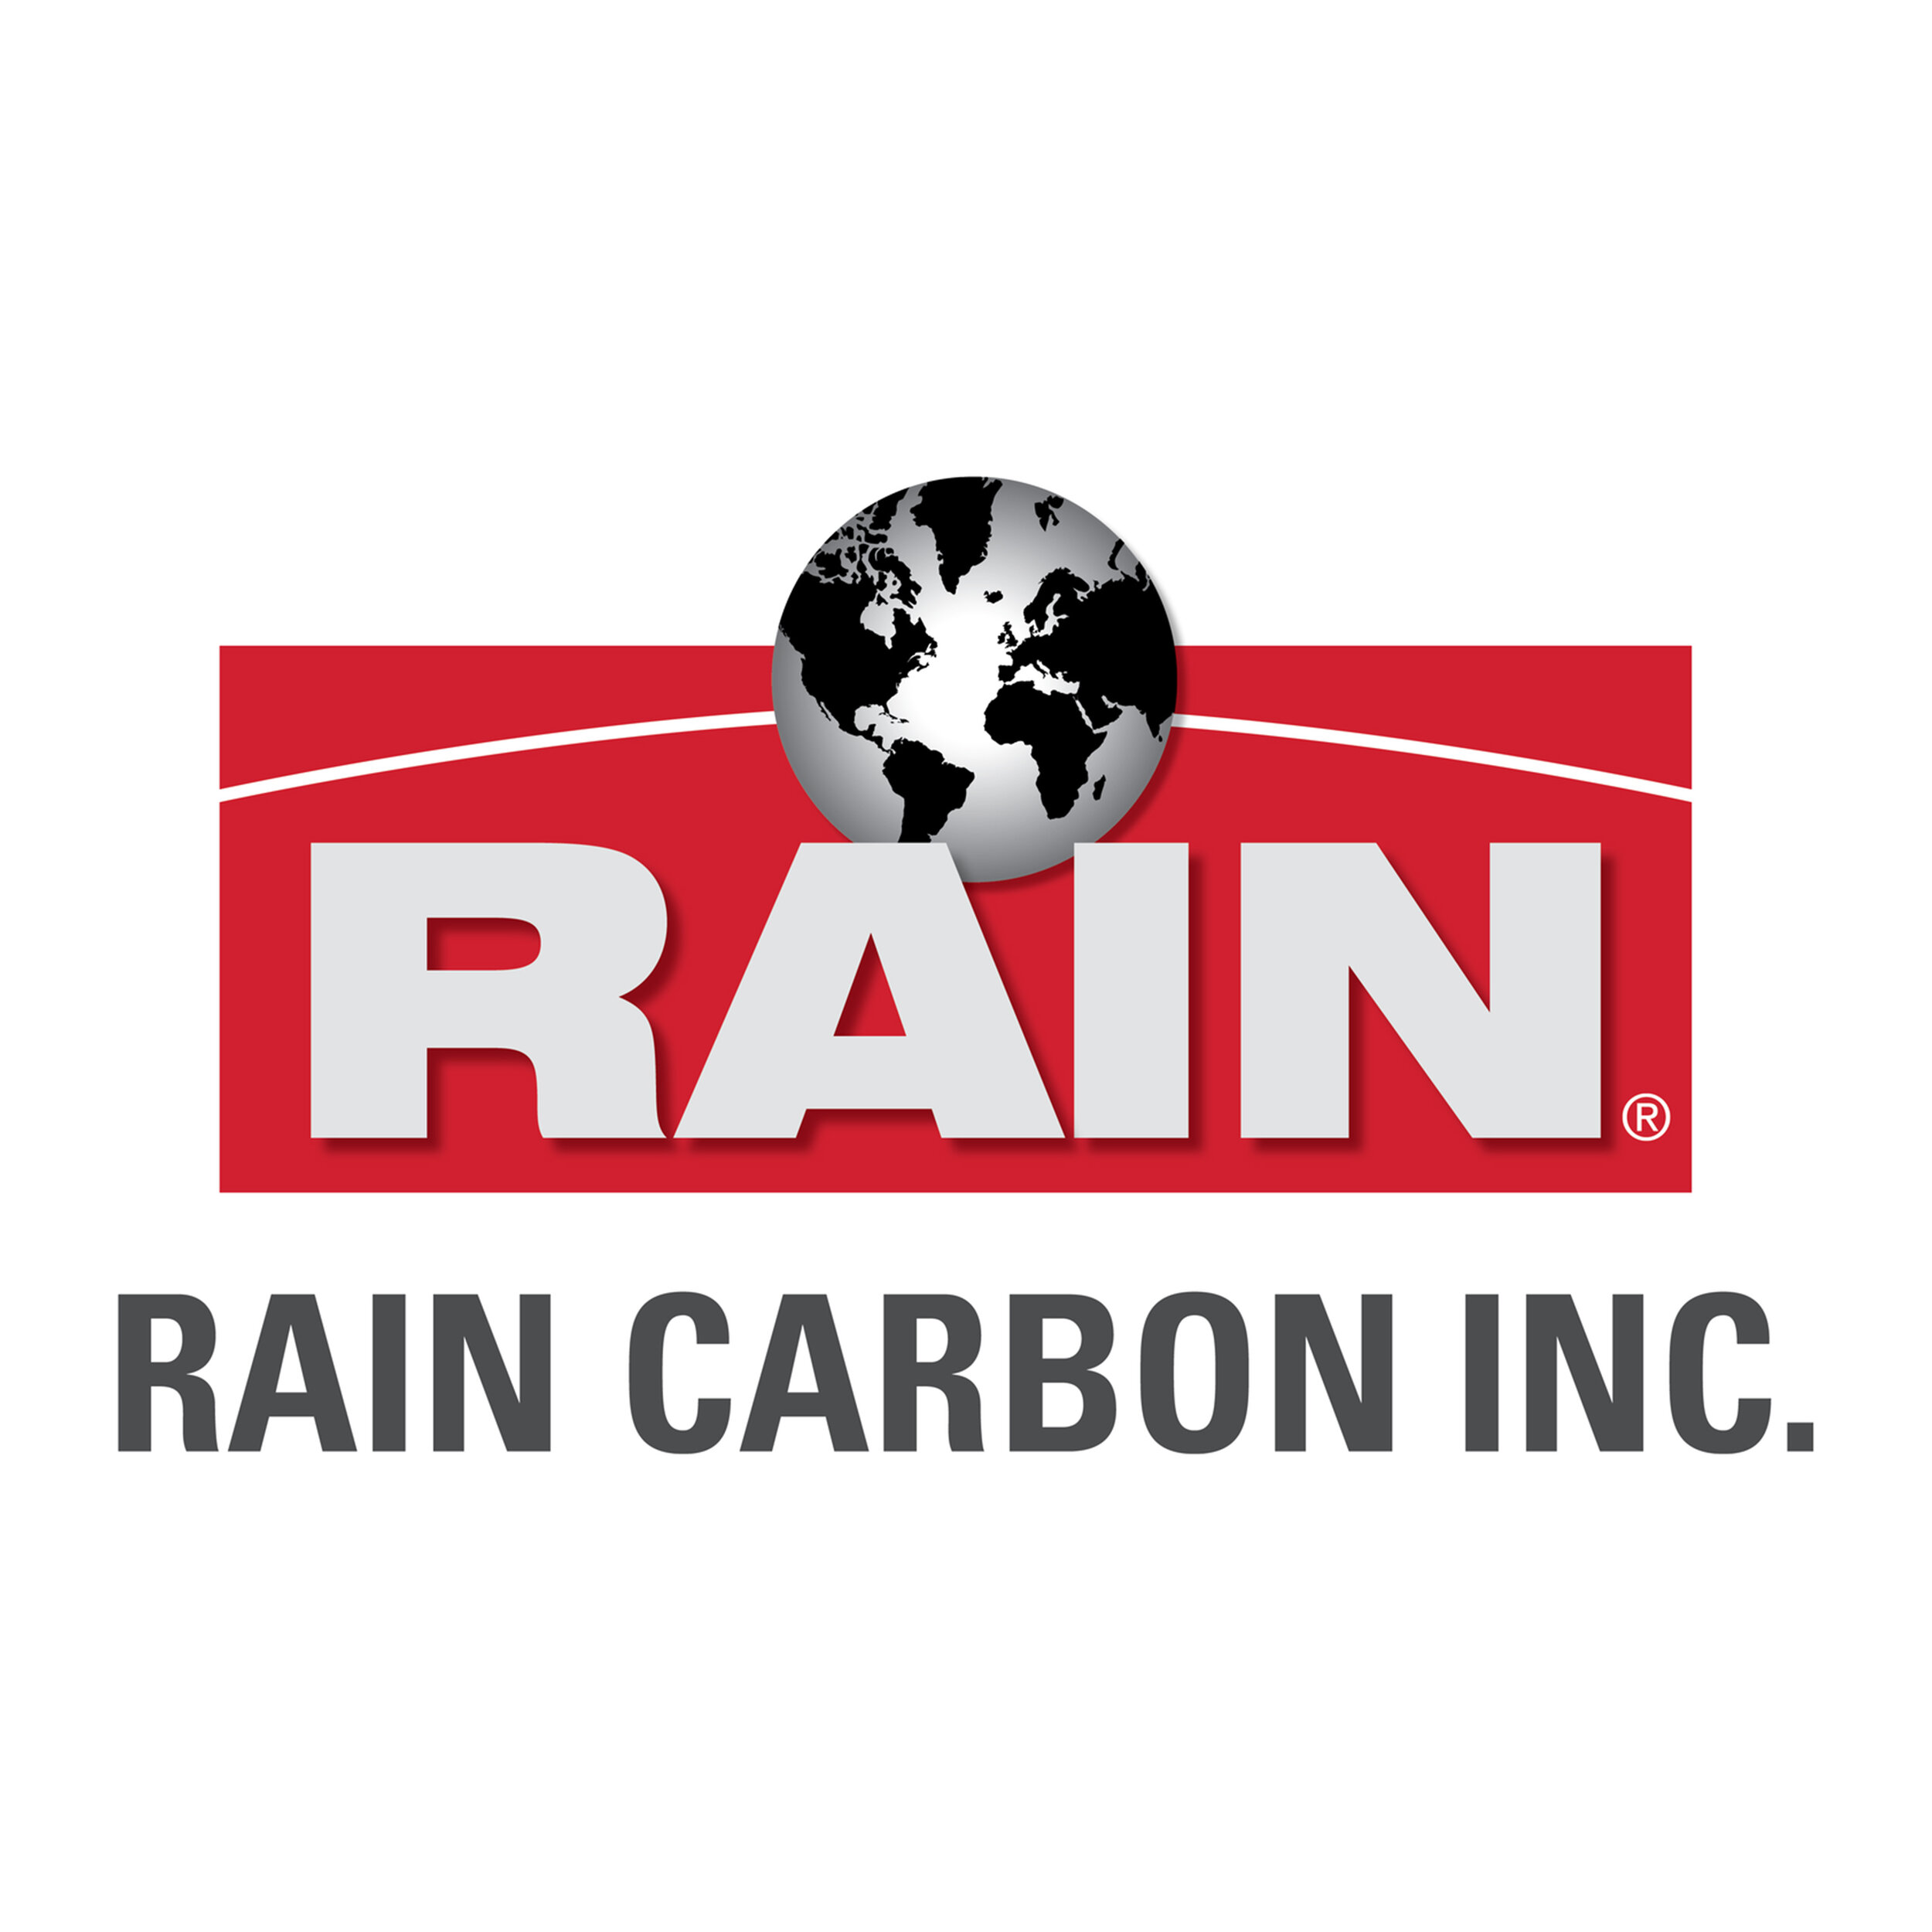 rain carbon inc.jpg